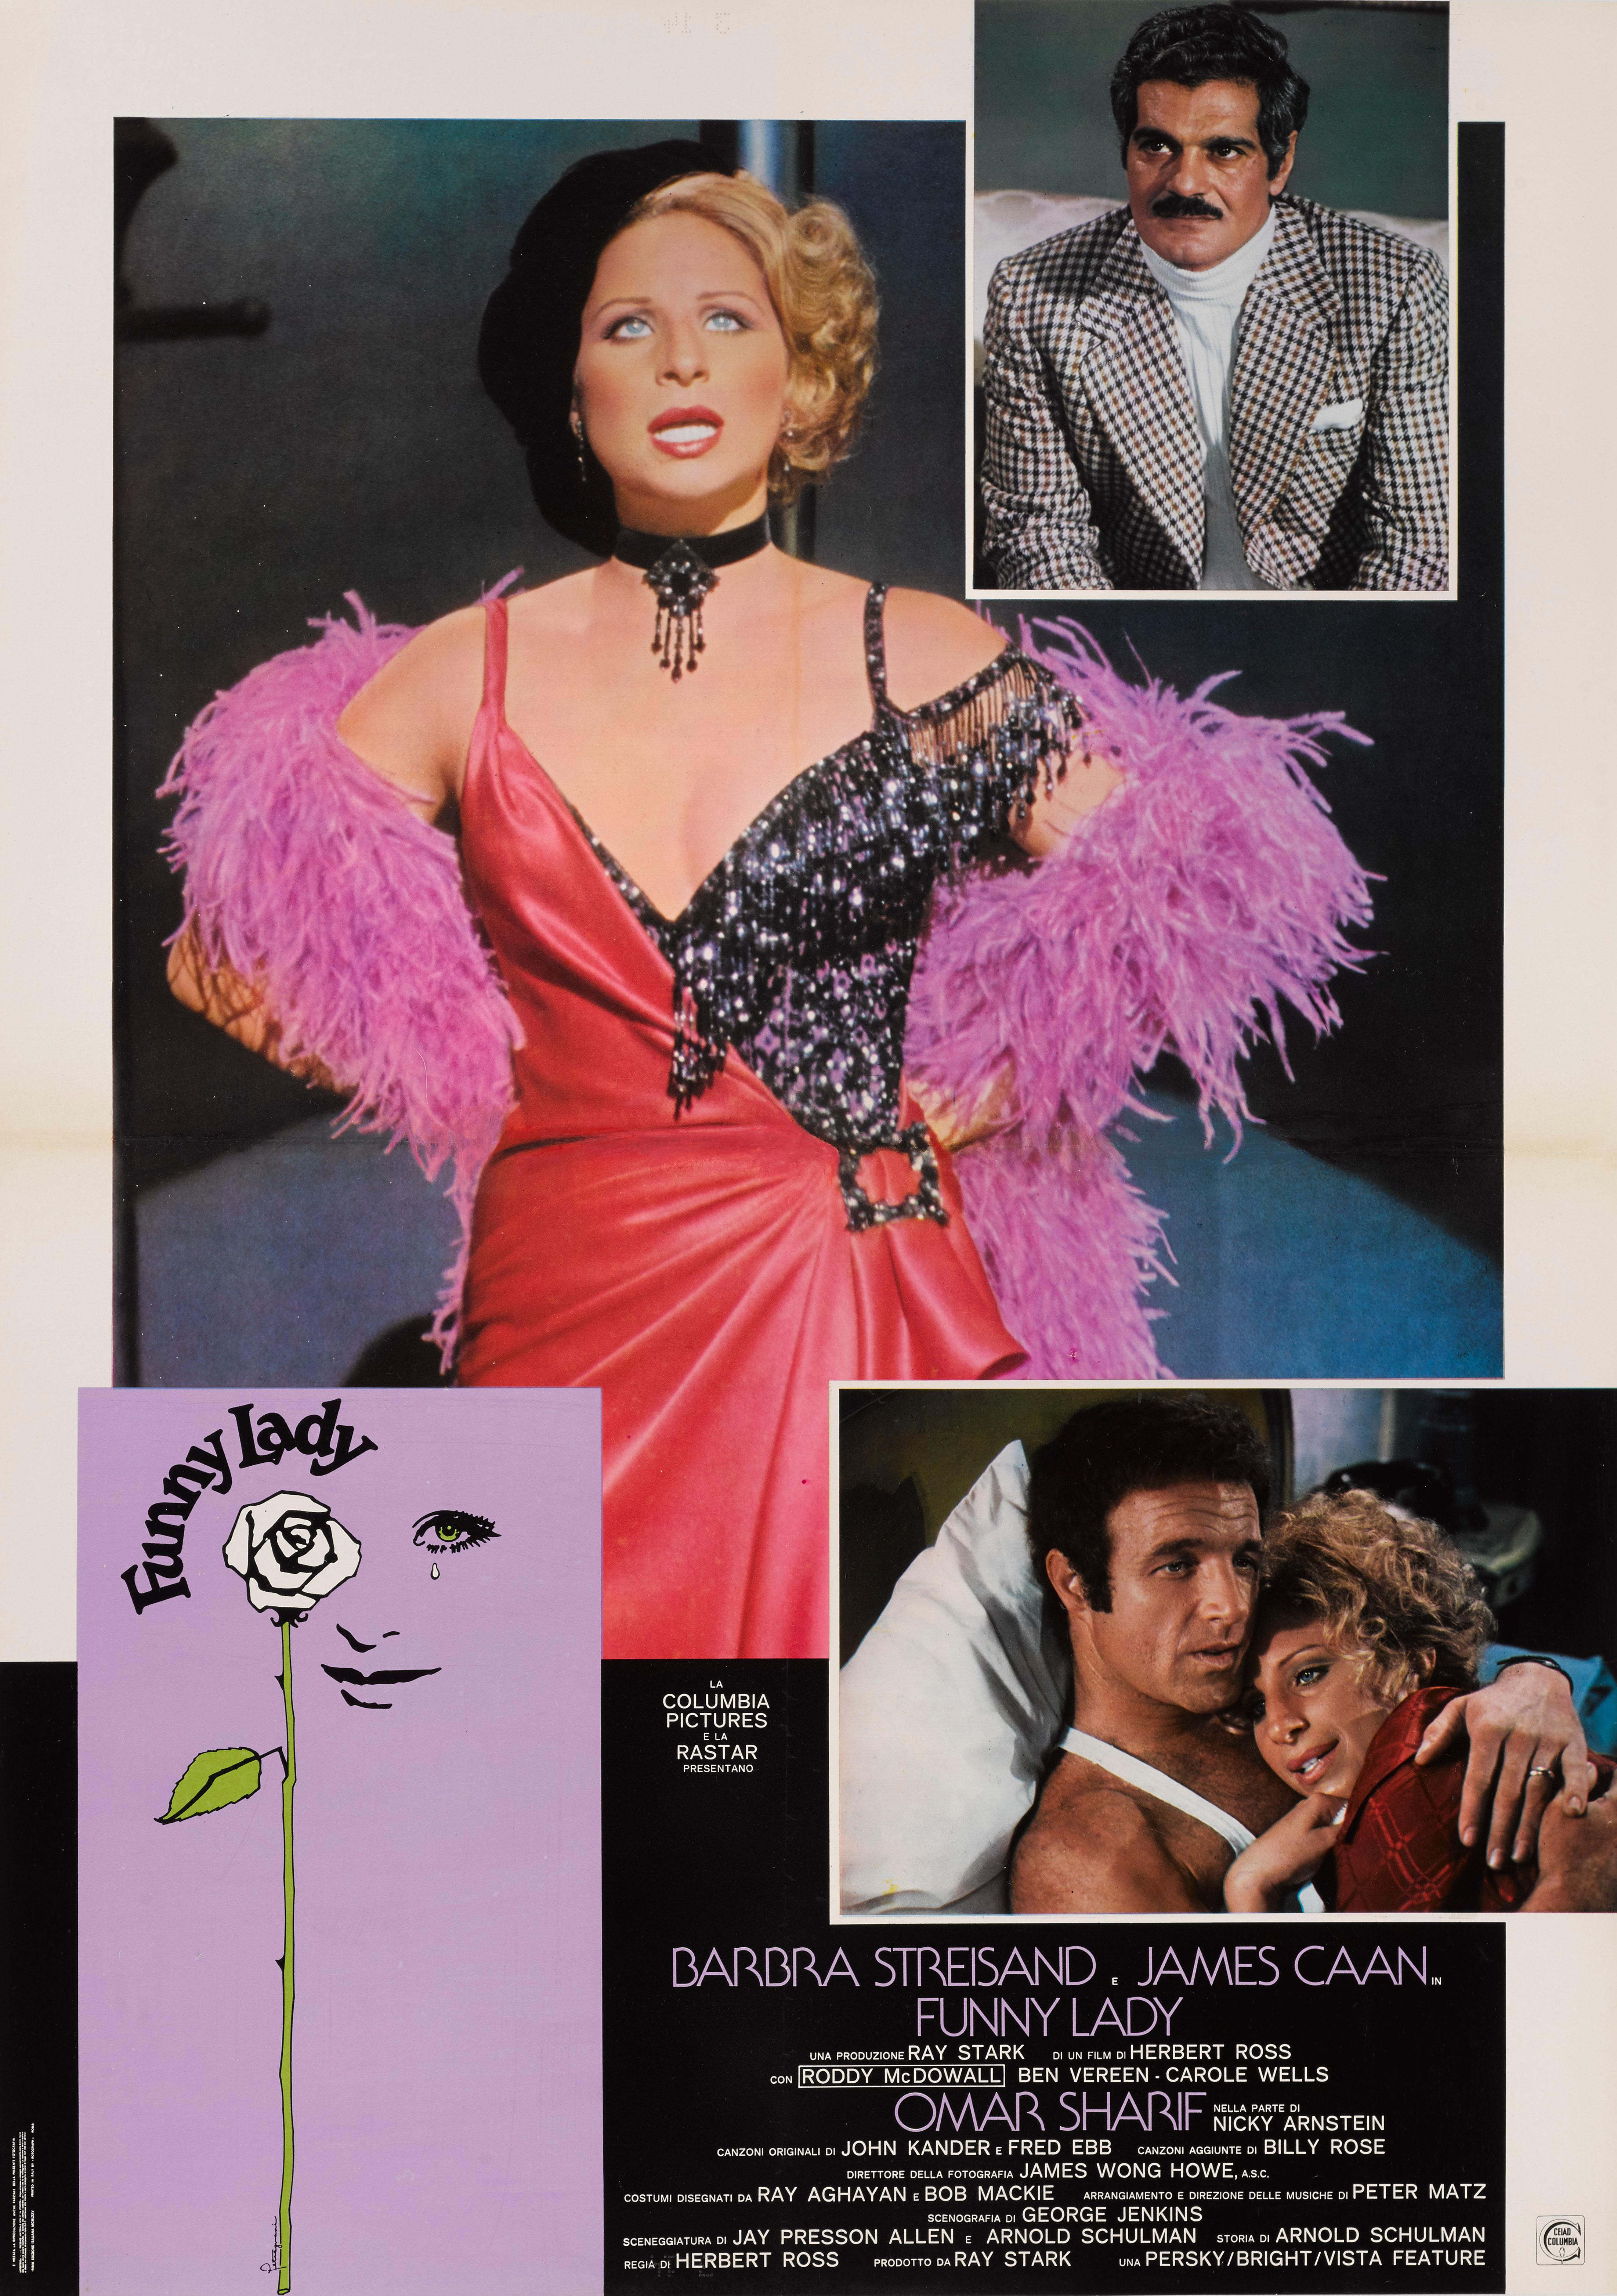 Affiche de film italienne originale pour la comédie de 1975 avec Barbra Streisand, James Caan, Omar Sharif.
Le film a été réalisé par Herbert Ross.
Ce poster est doublé d'une toile de conservation et il est expédié enroulé dans un tube